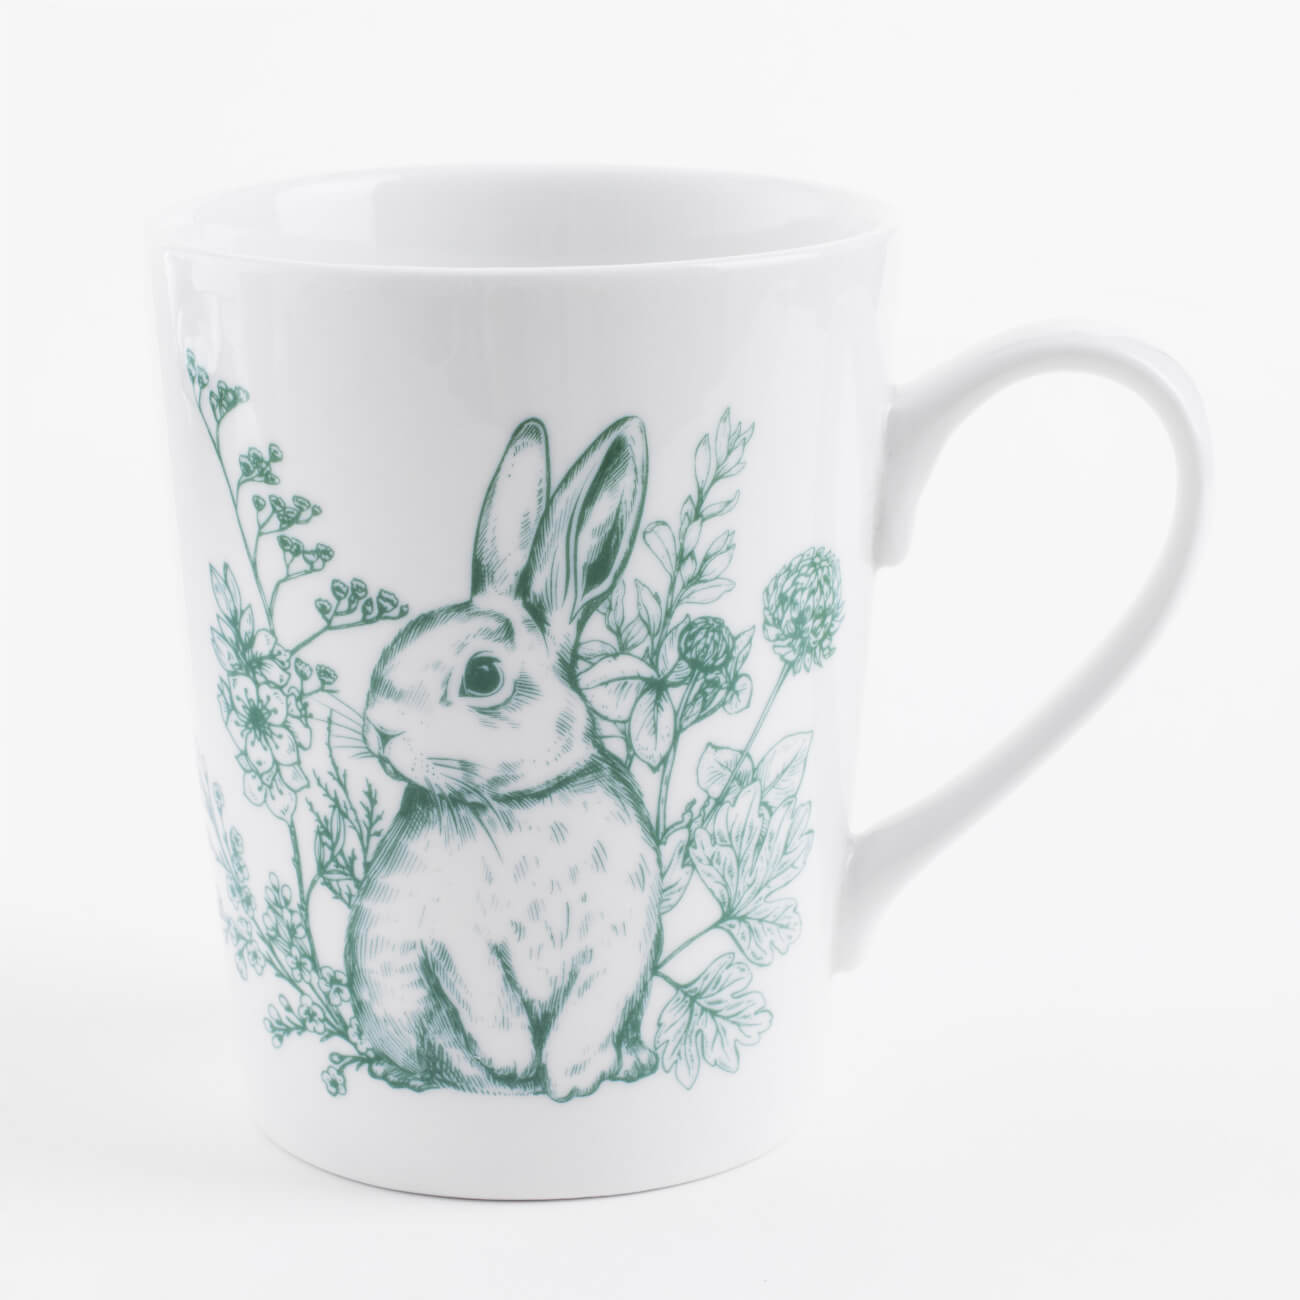 Кружка, 500 мл, керамика, бело-зеленая, Кролик в цветах, Easter blooming изображение № 1